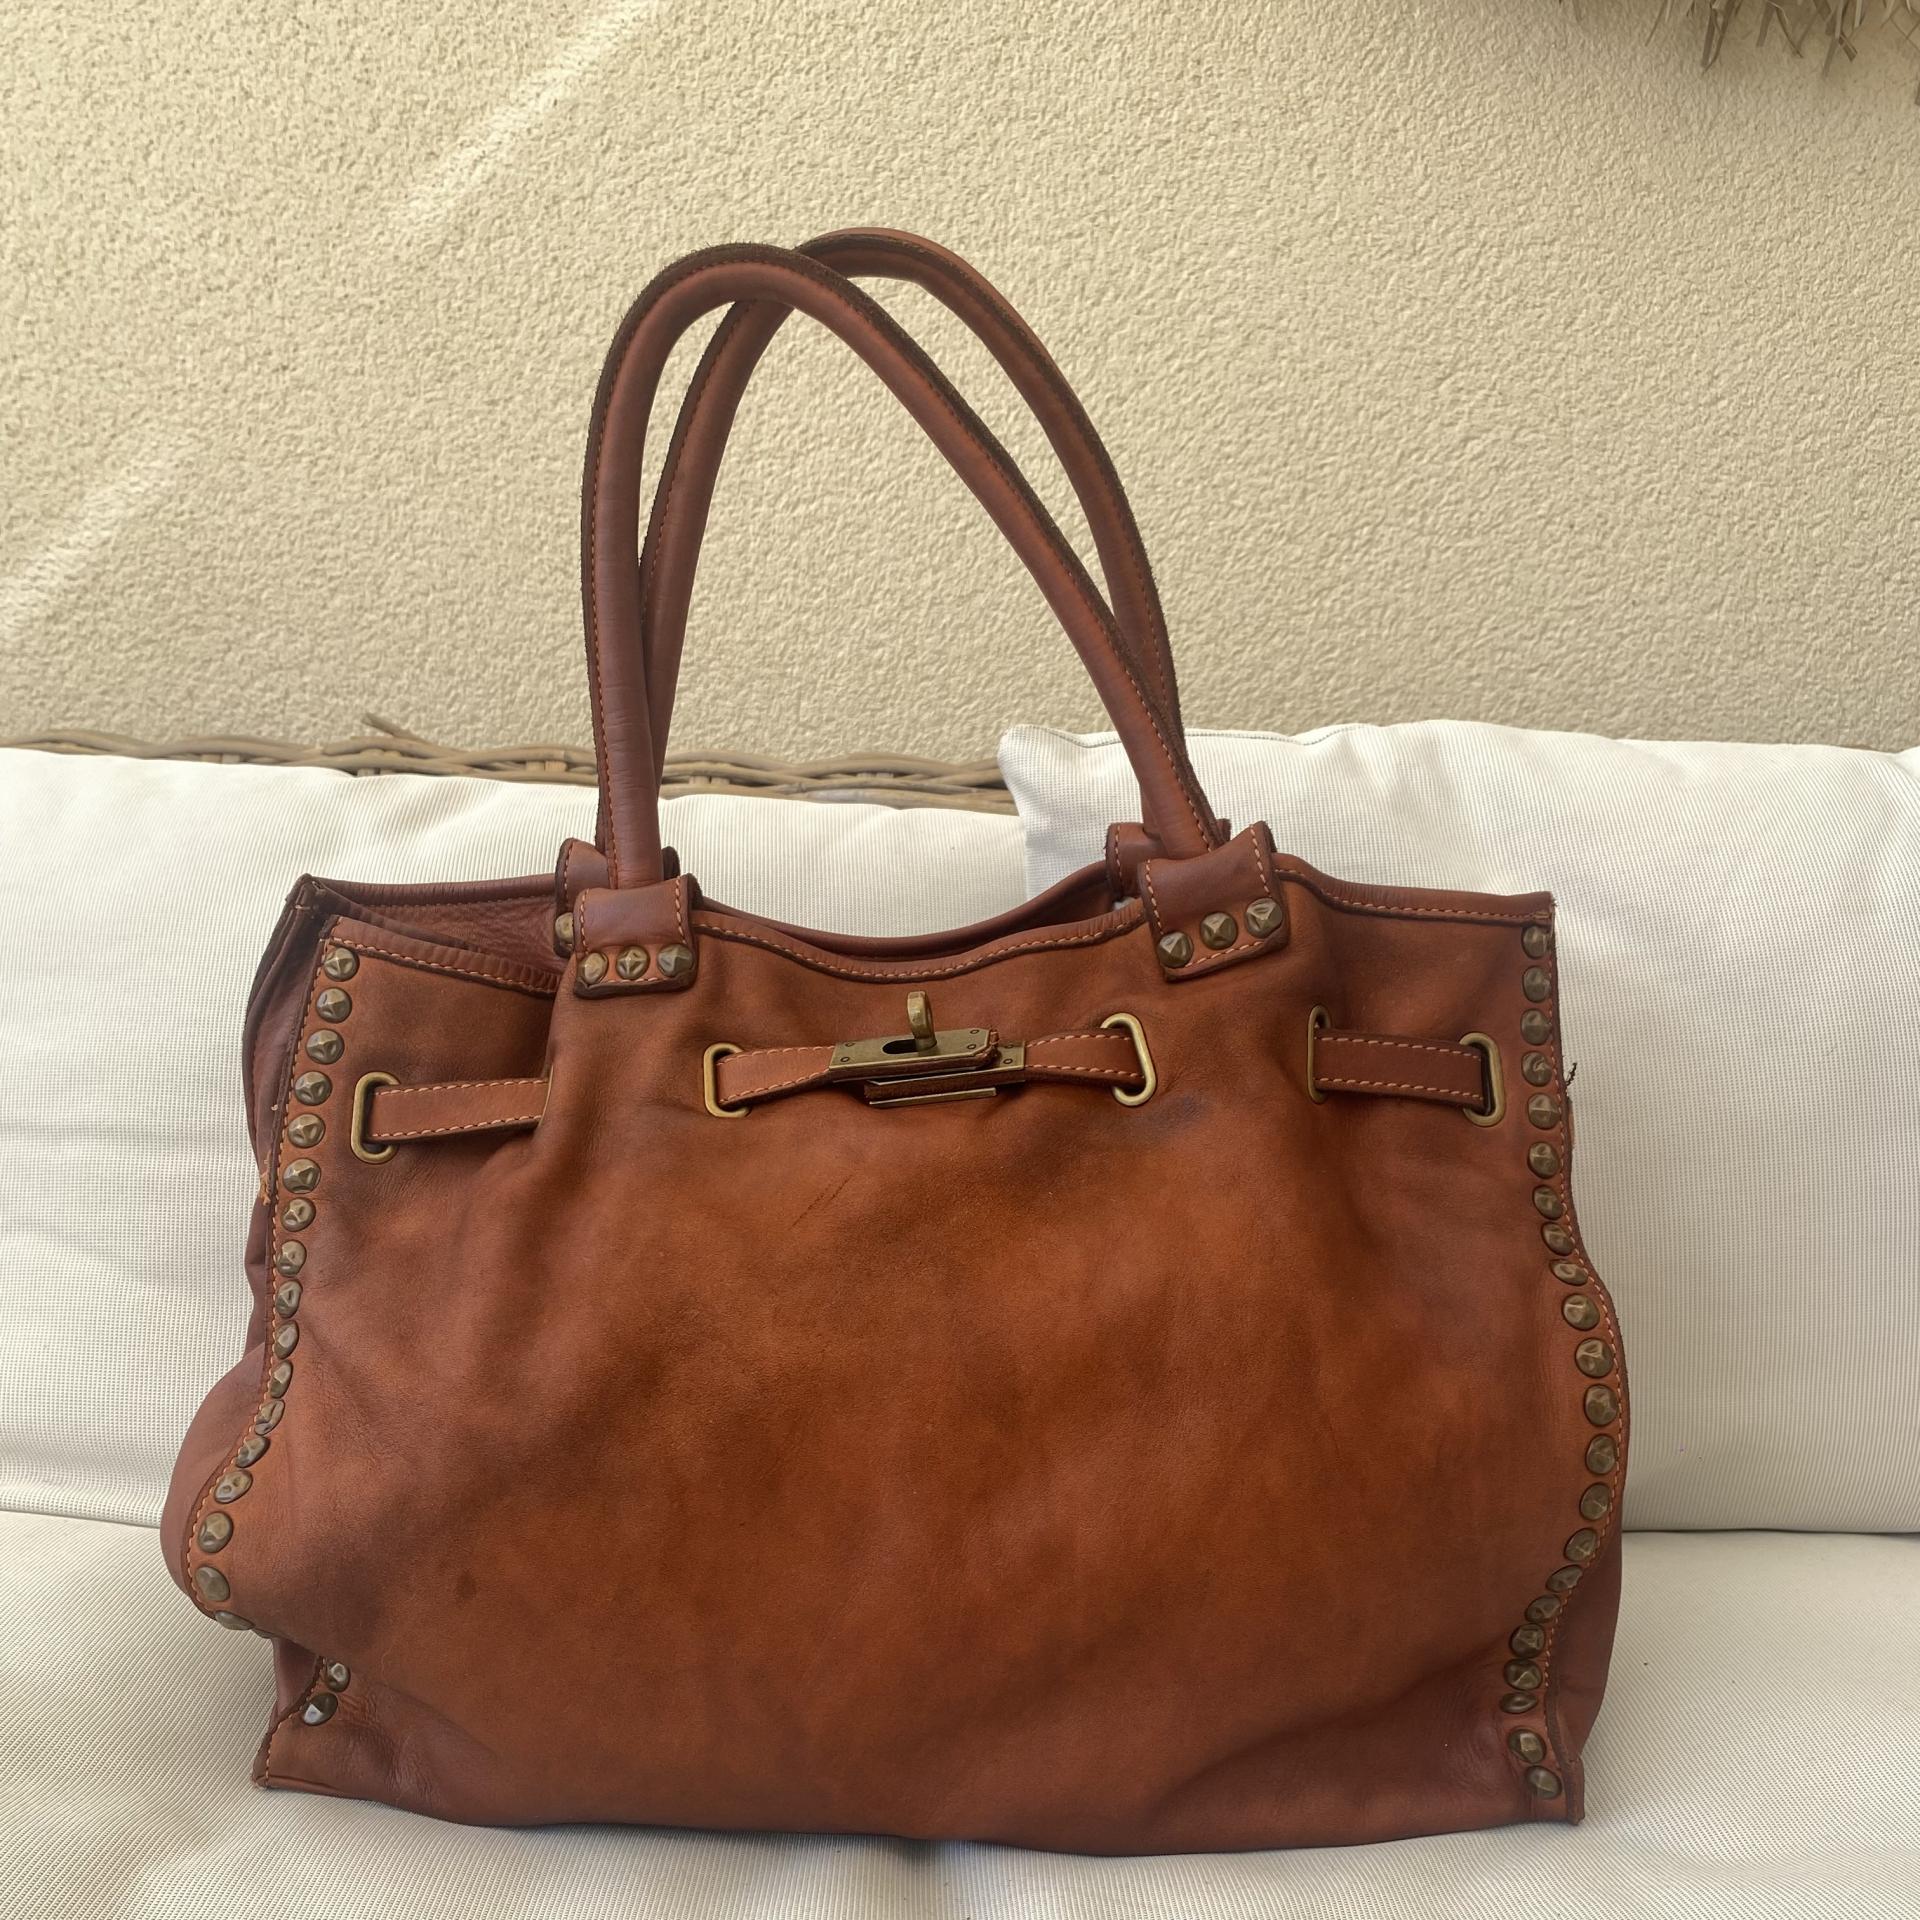 Handbag P. Lavada marrón tachas 